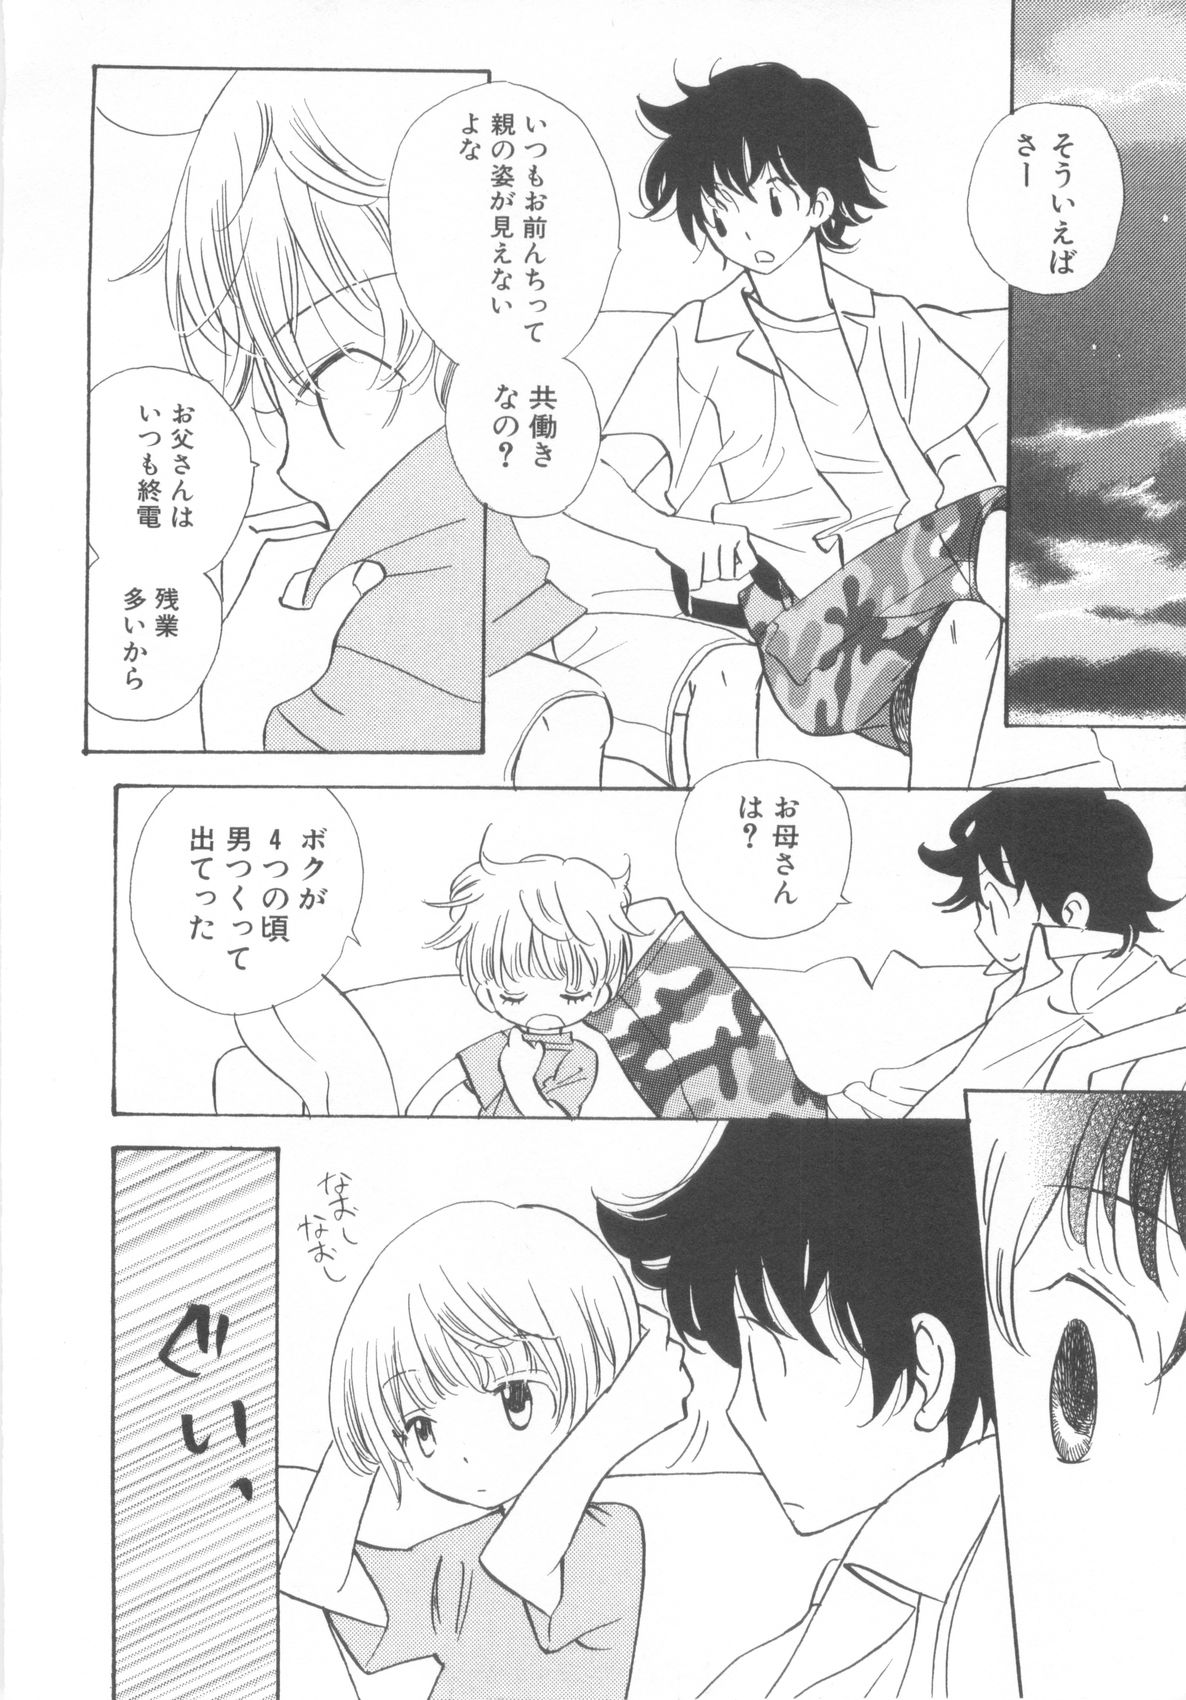 [Anthology] Shota Tama Vol. 3 page 22 full